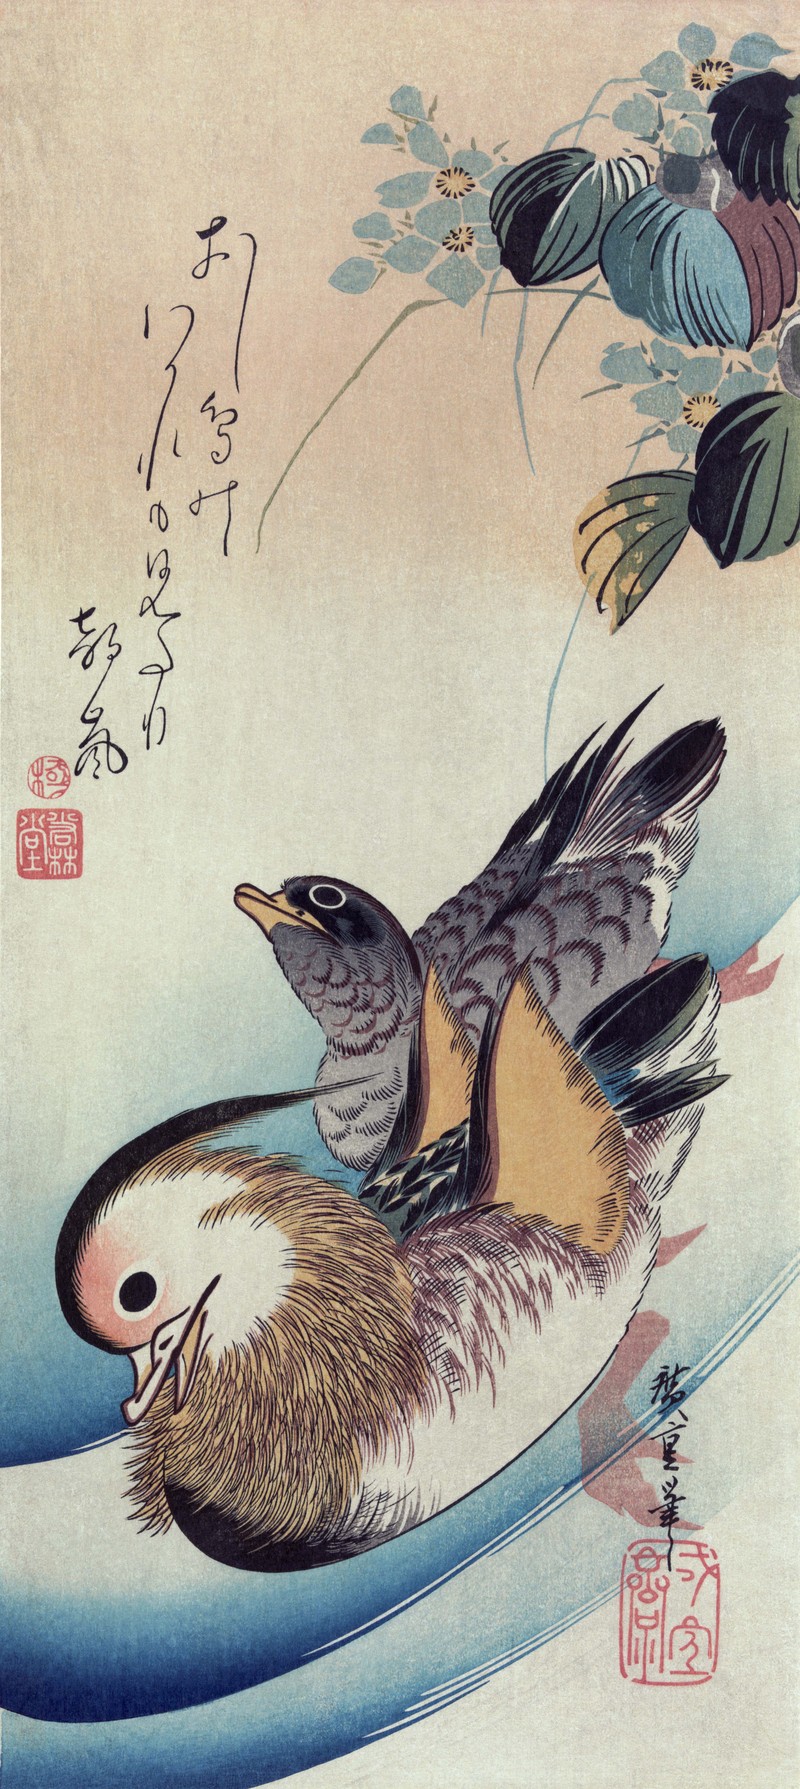 mandarin duck (Aix galericulata); DISPLAY FULL IMAGE.